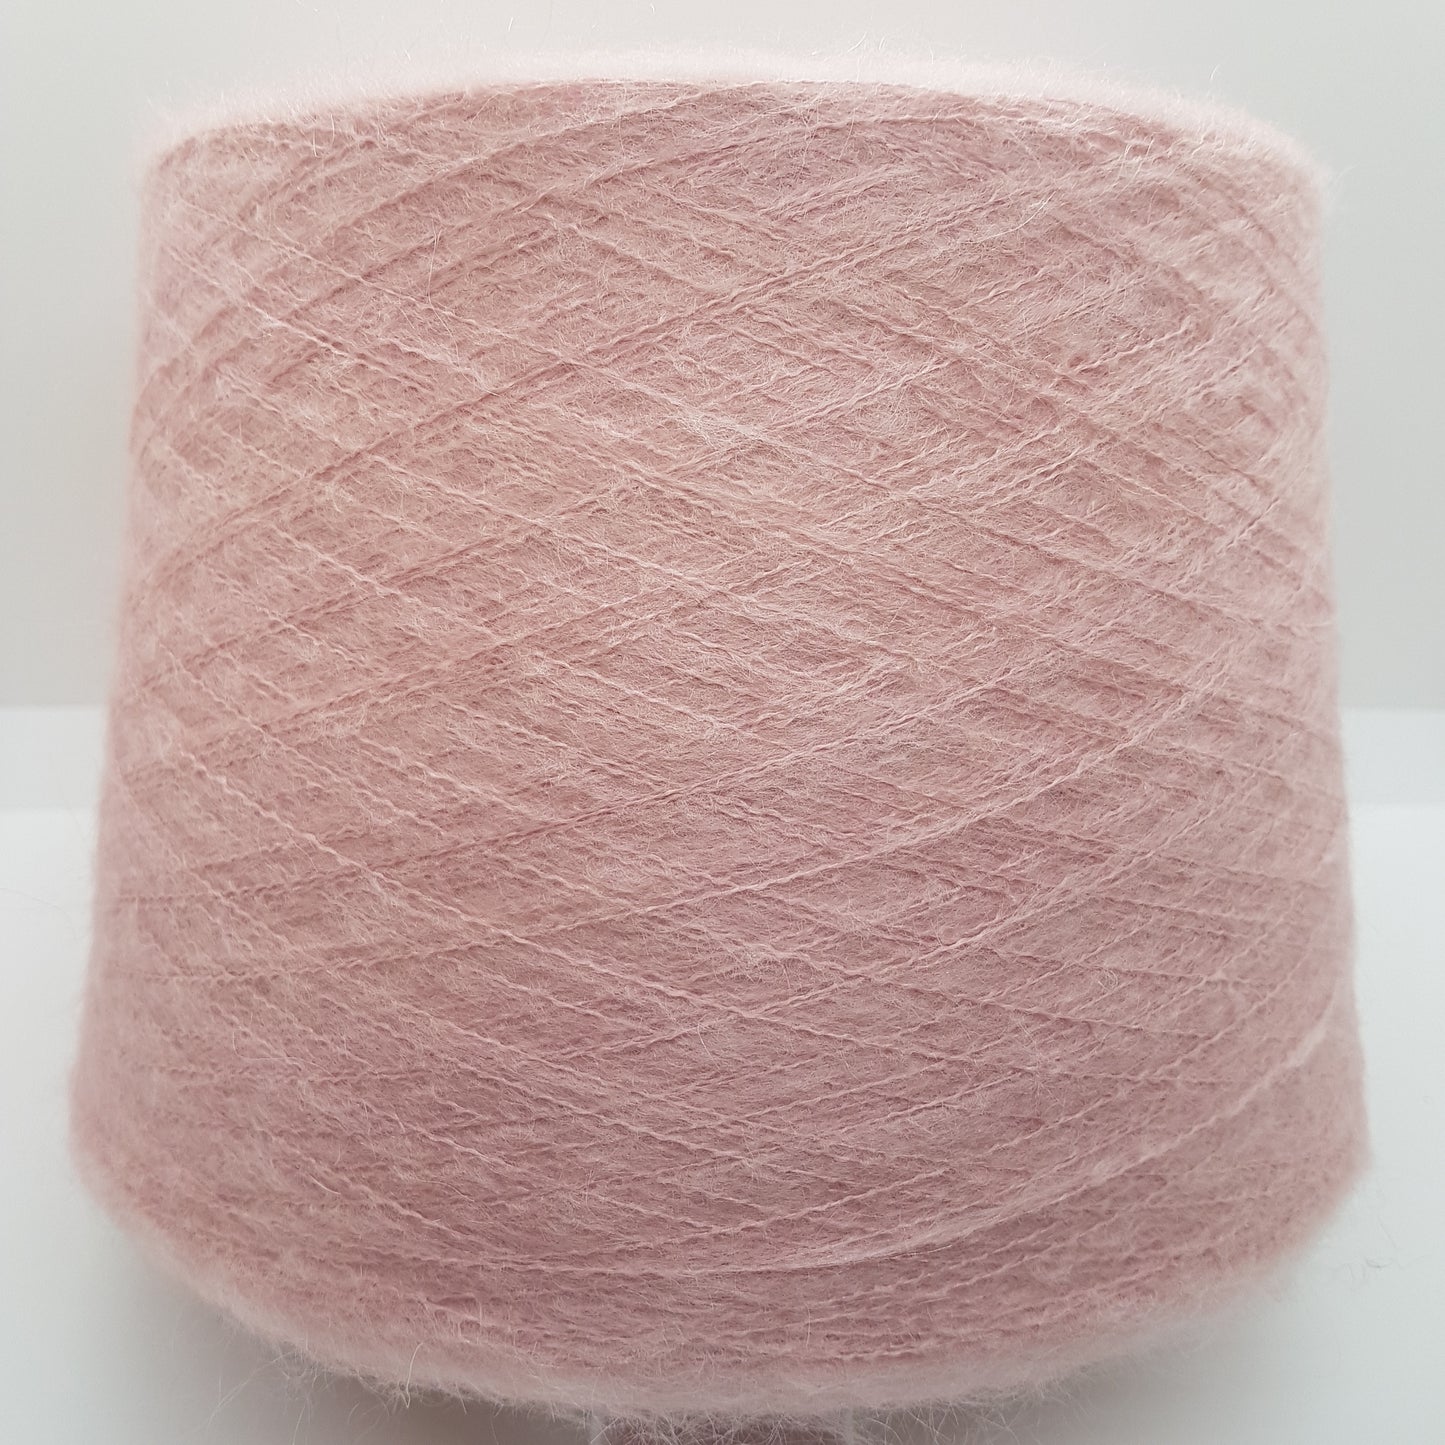 100g Mohair blødt italiensk garn farve Antique Pink N.238